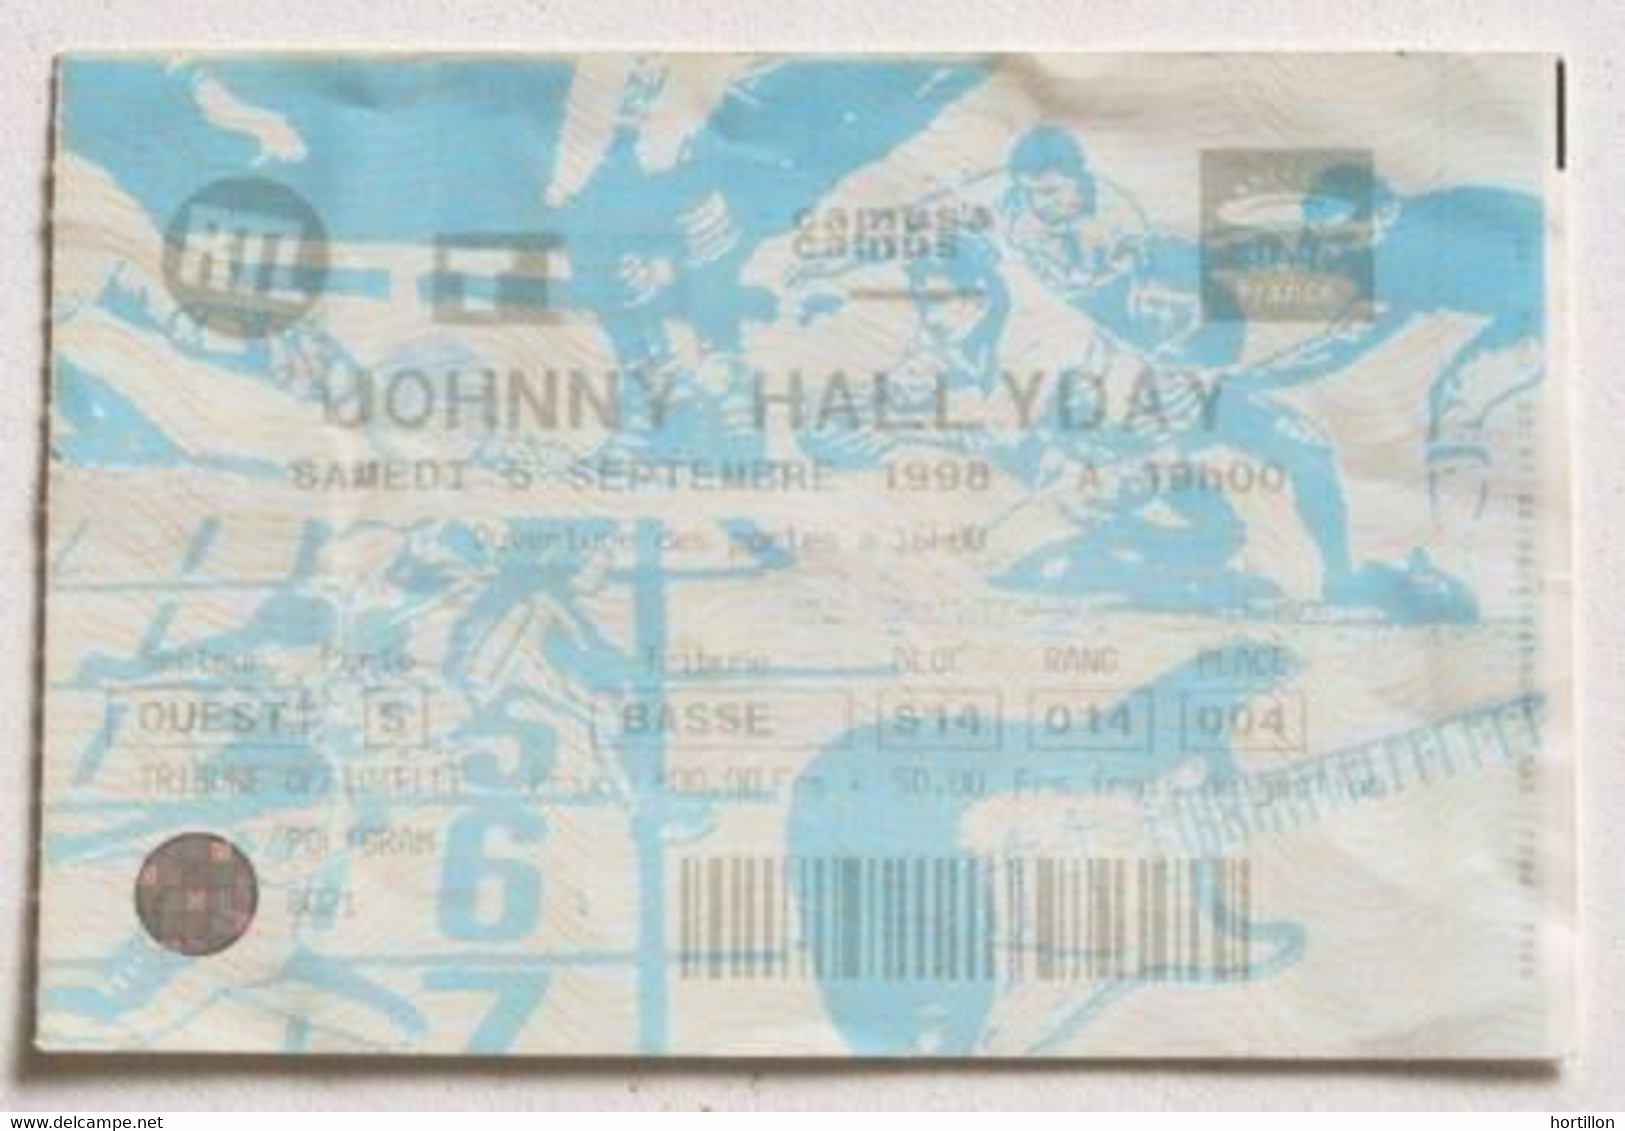 JOHNNY HALLYDAY Billet Ticket Concert FRANCE Paris Stade De France 05/09/1998 - Concert Tickets